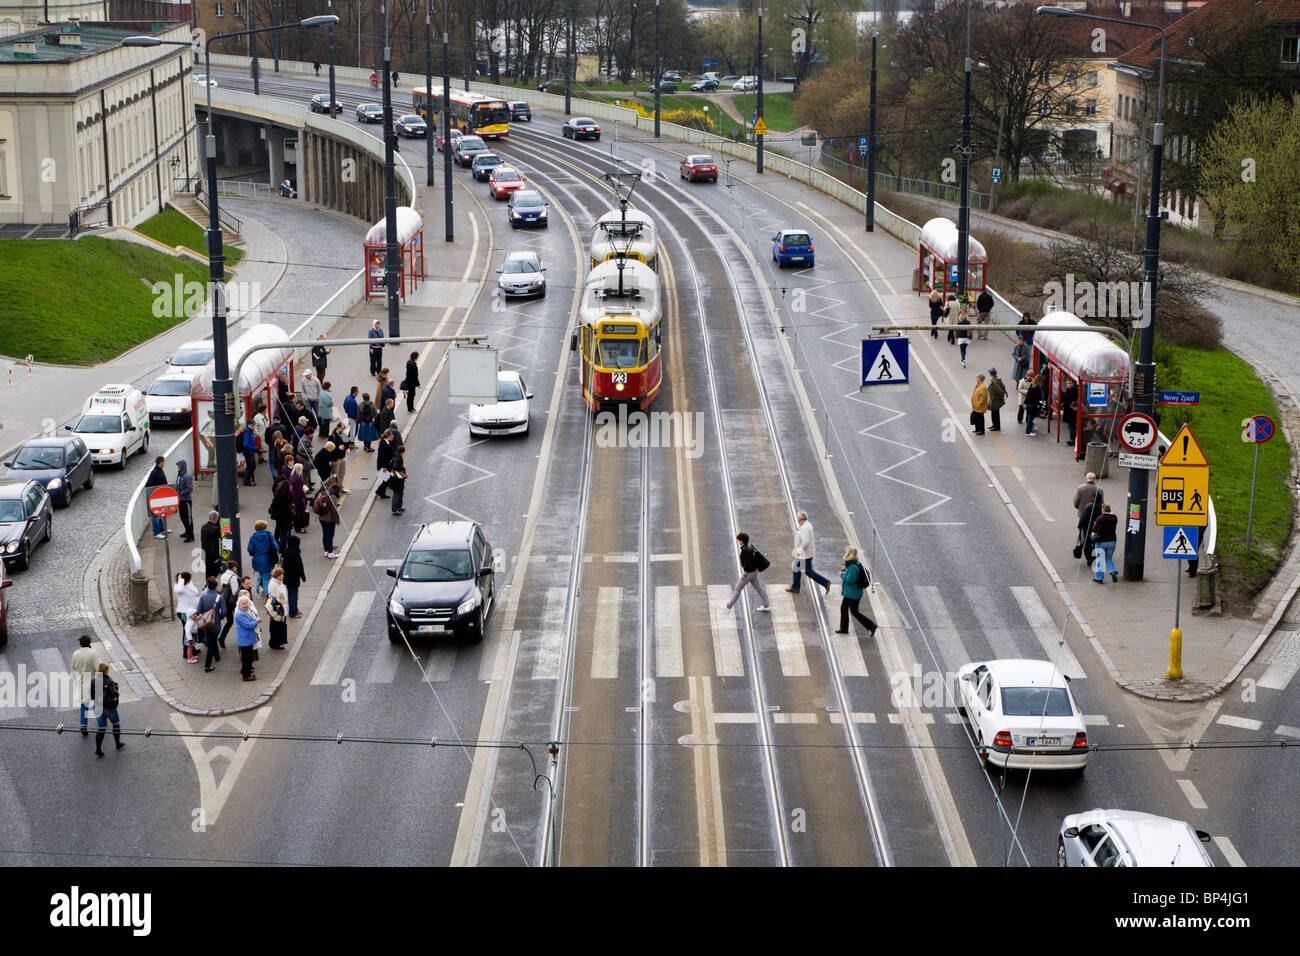 Les voitures, les tramways et les gens sur la solidarité Avenue (Aleja Solidarnosci), l'une des artères principales de Varsovie Pologne Banque D'Images